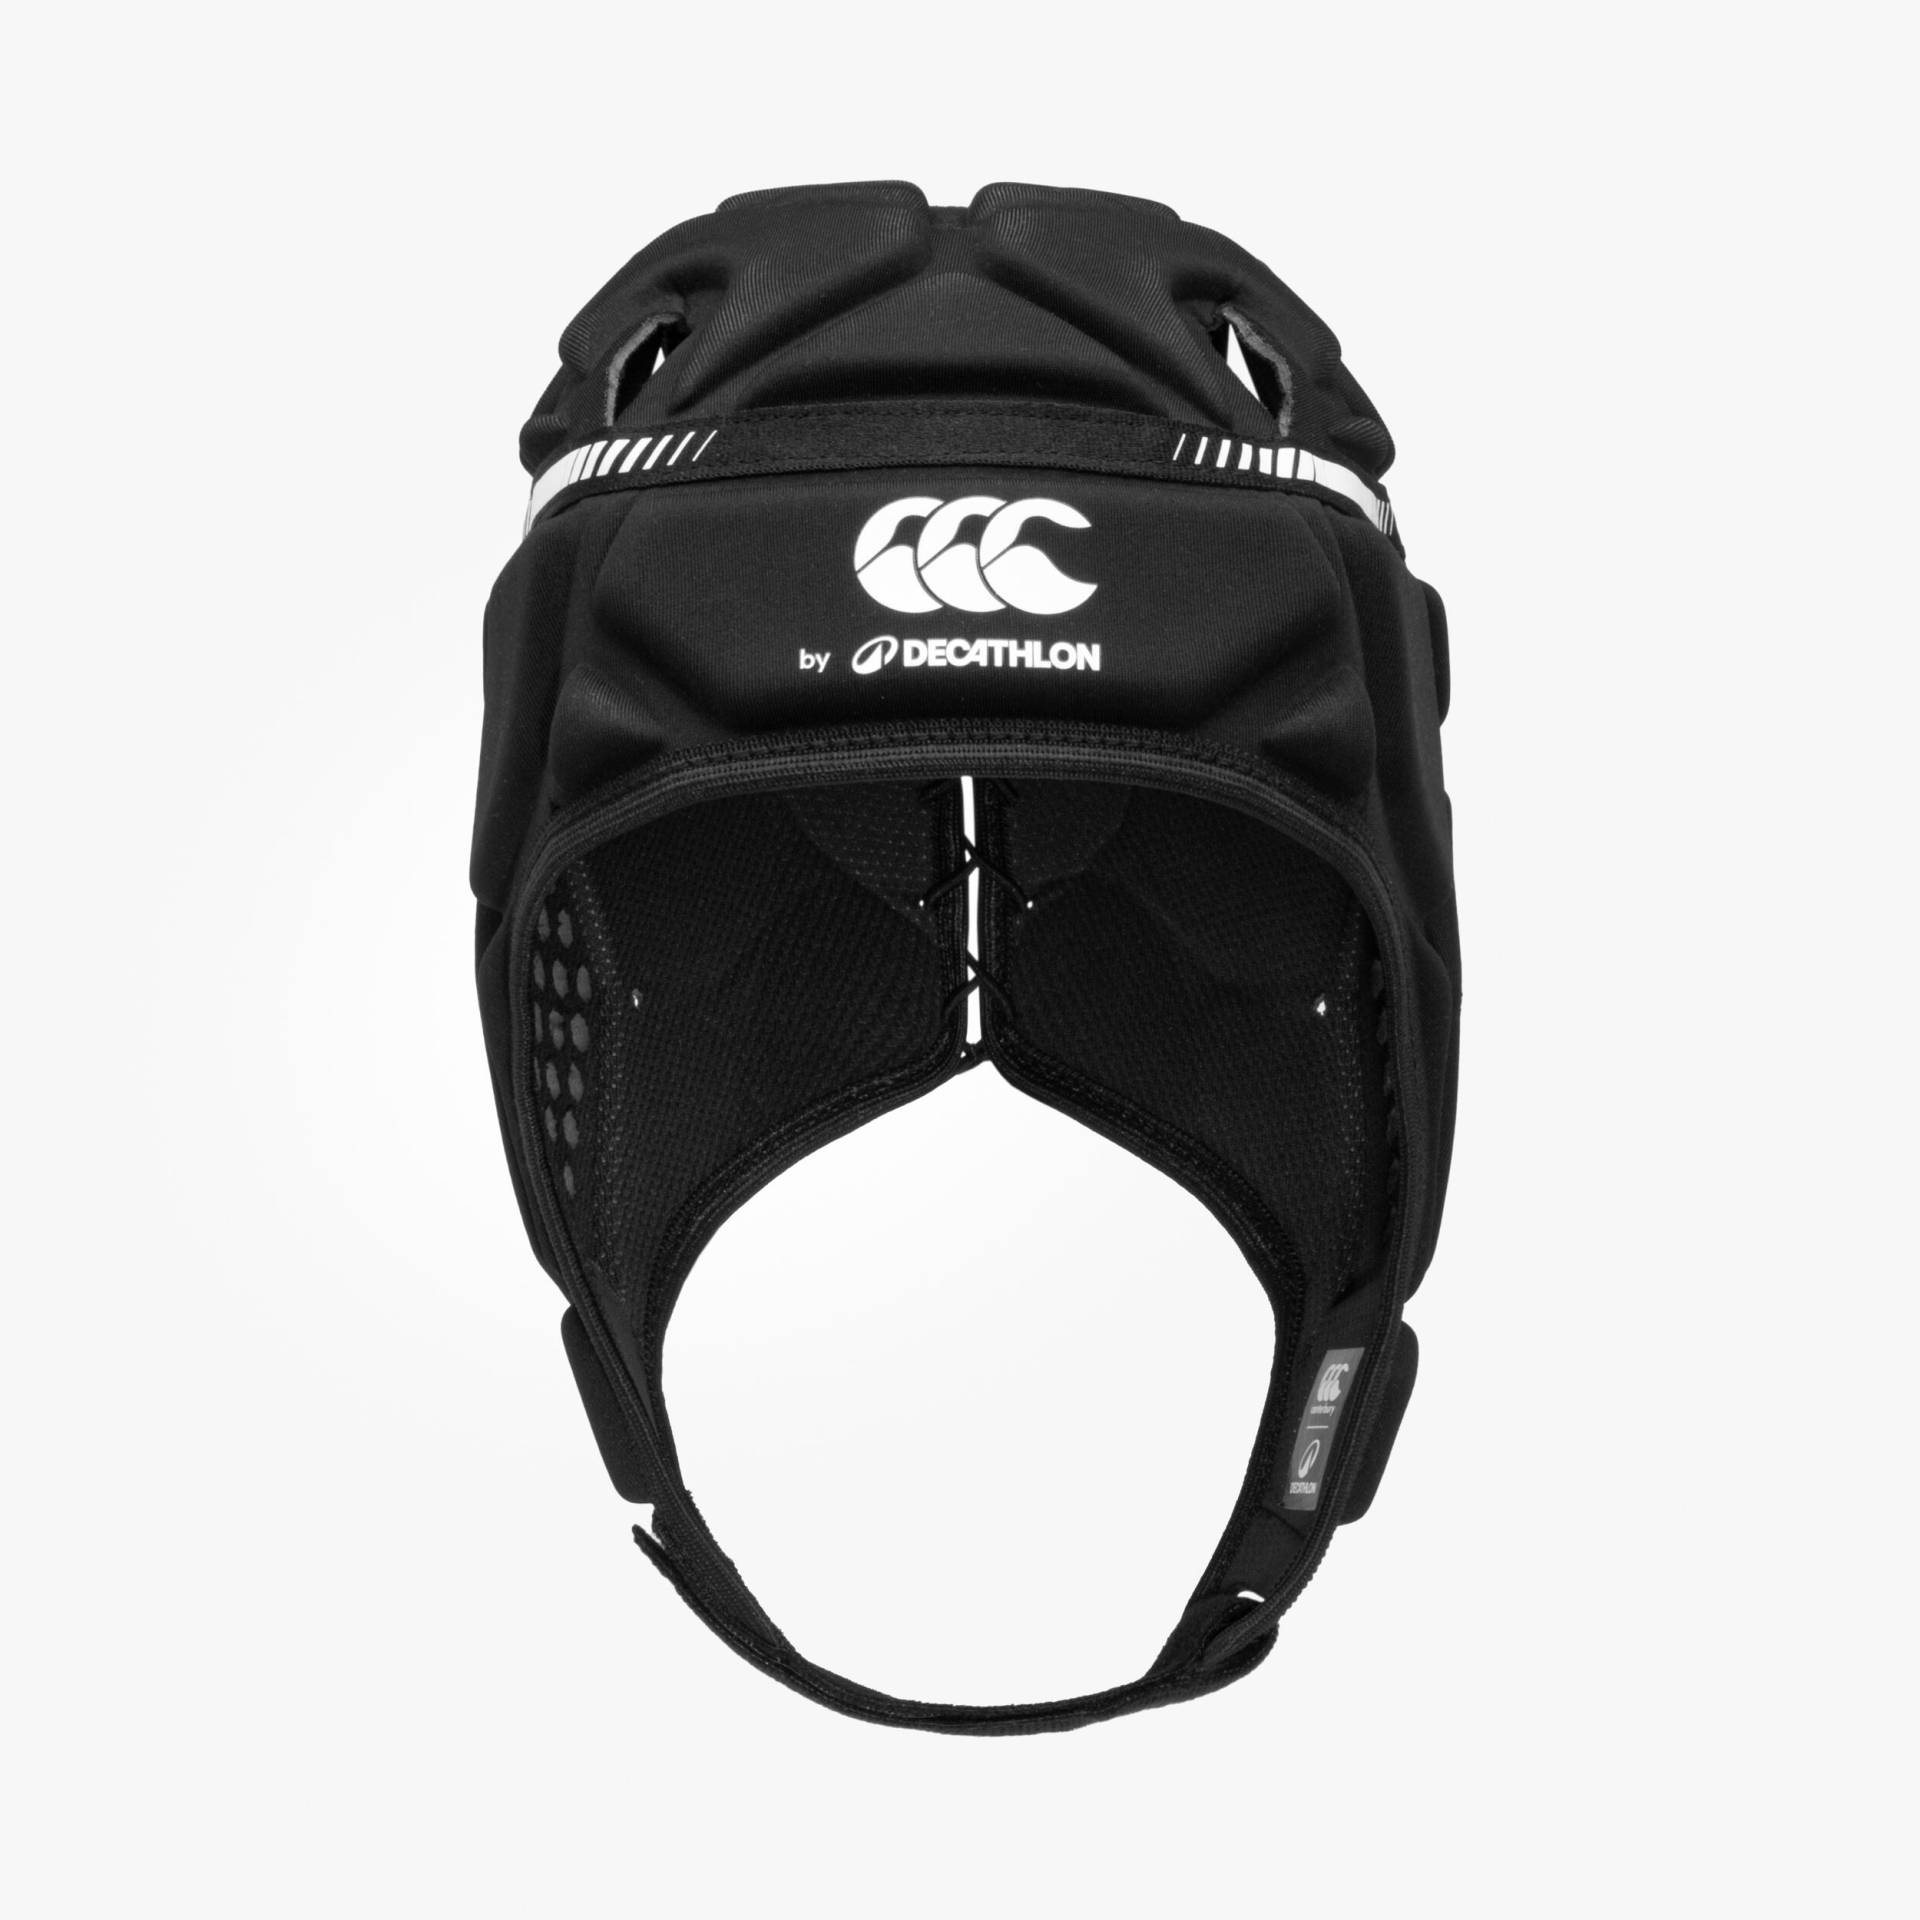 Damen/Herren Rugby Kopfschutz - R500 DECATHLON Canterbury schwarz von OFFLOAD